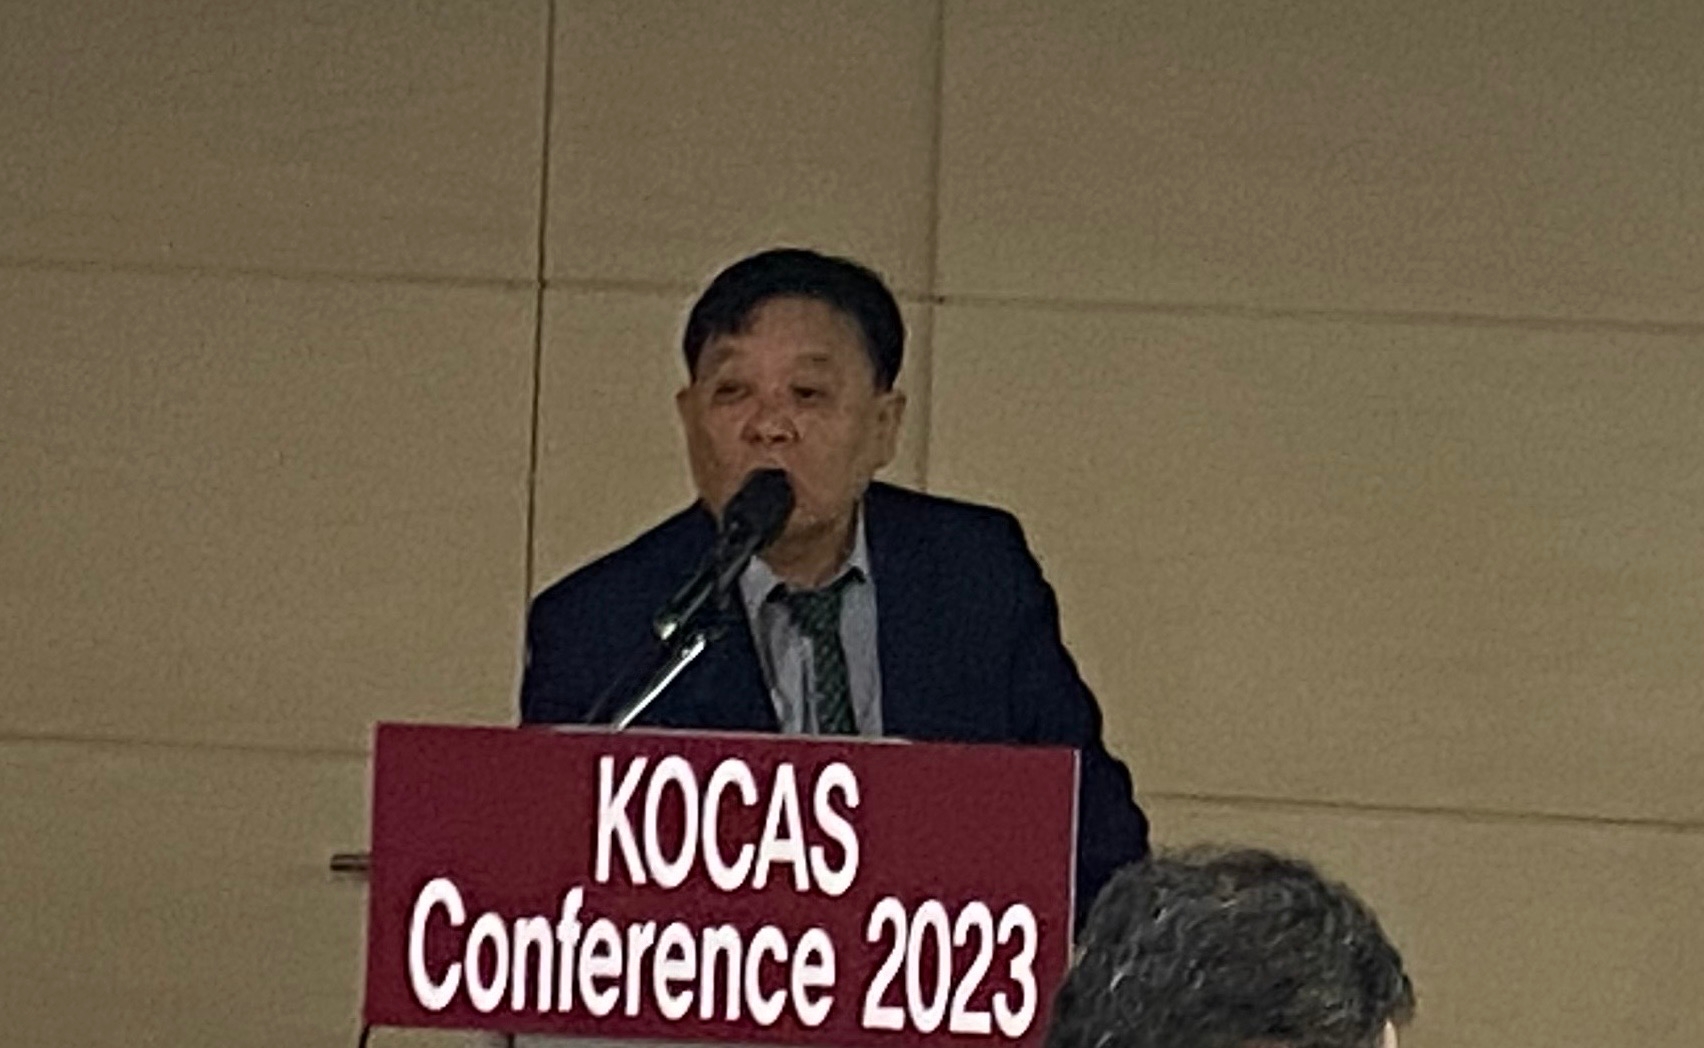 이건희 한국신용카드학회 이사는 23일 서울 중구 바비엥2 교육센터에서 열린 ‘KOCAS 컨퍼런스 2023’에서 발언하고 있다./ 사진 = 홍지인 기자